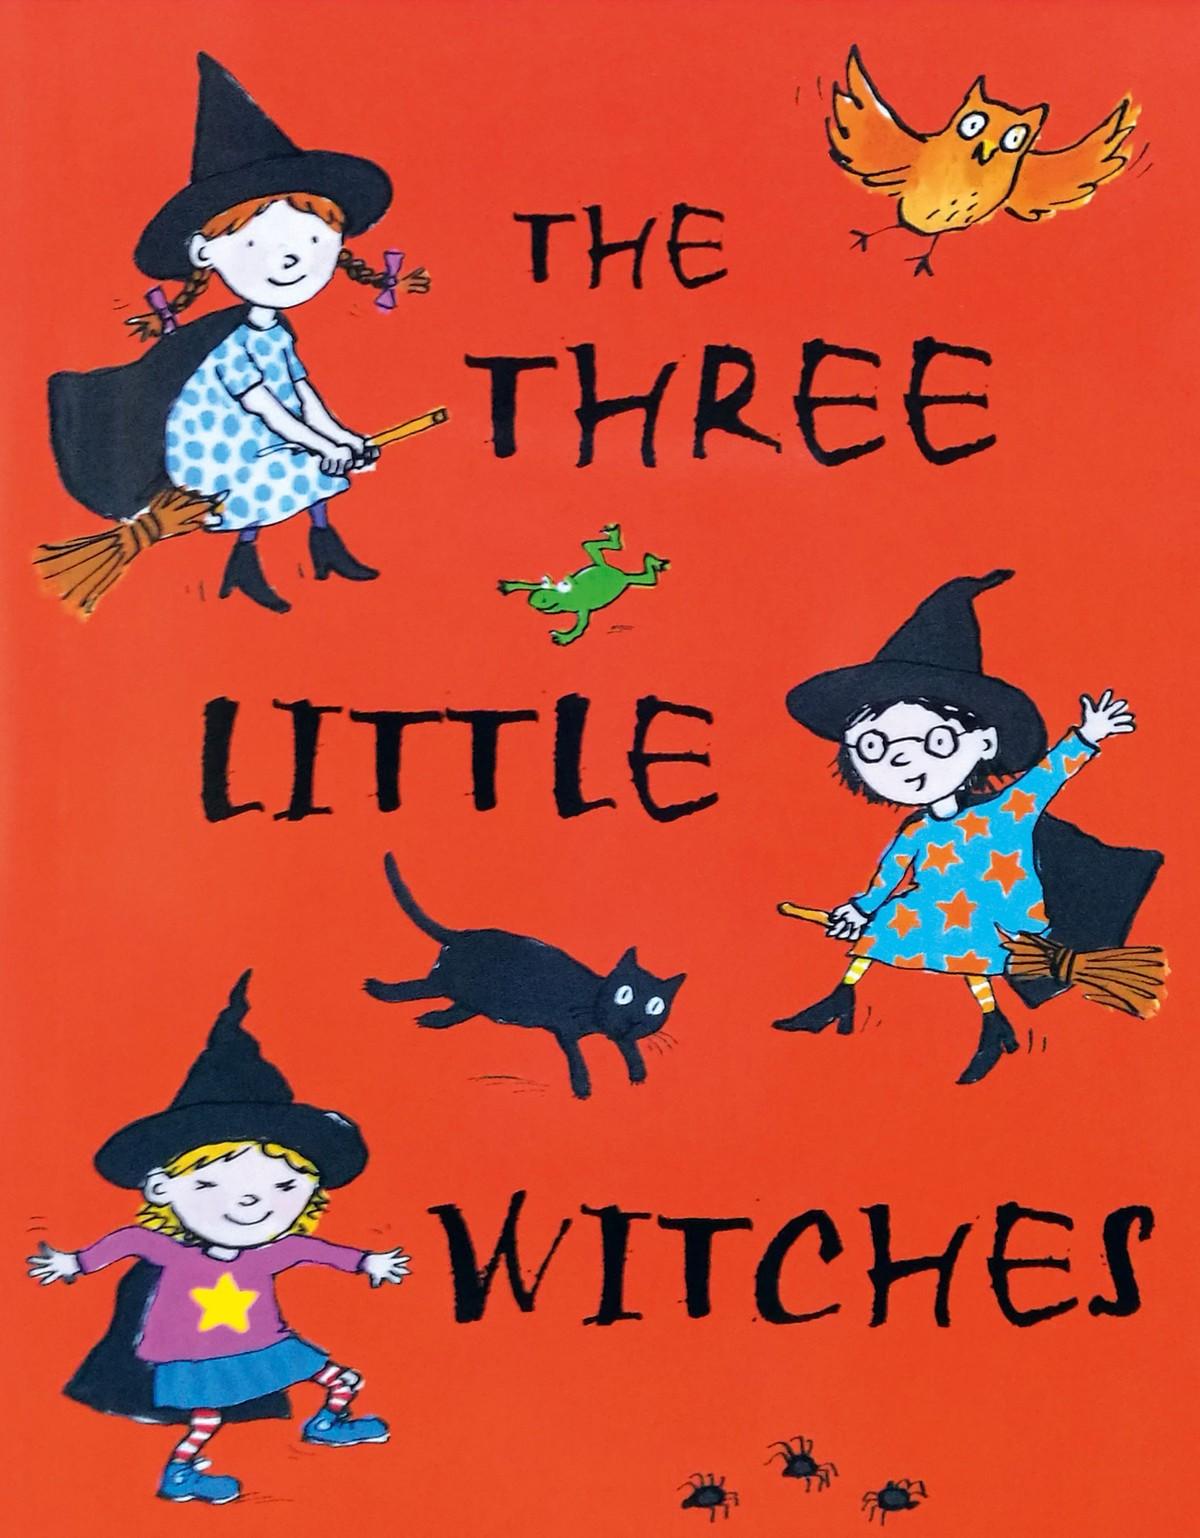 Une affiche rouge avec 3 sorcière dessinées, un crapeau, un chat noir et un hibou.